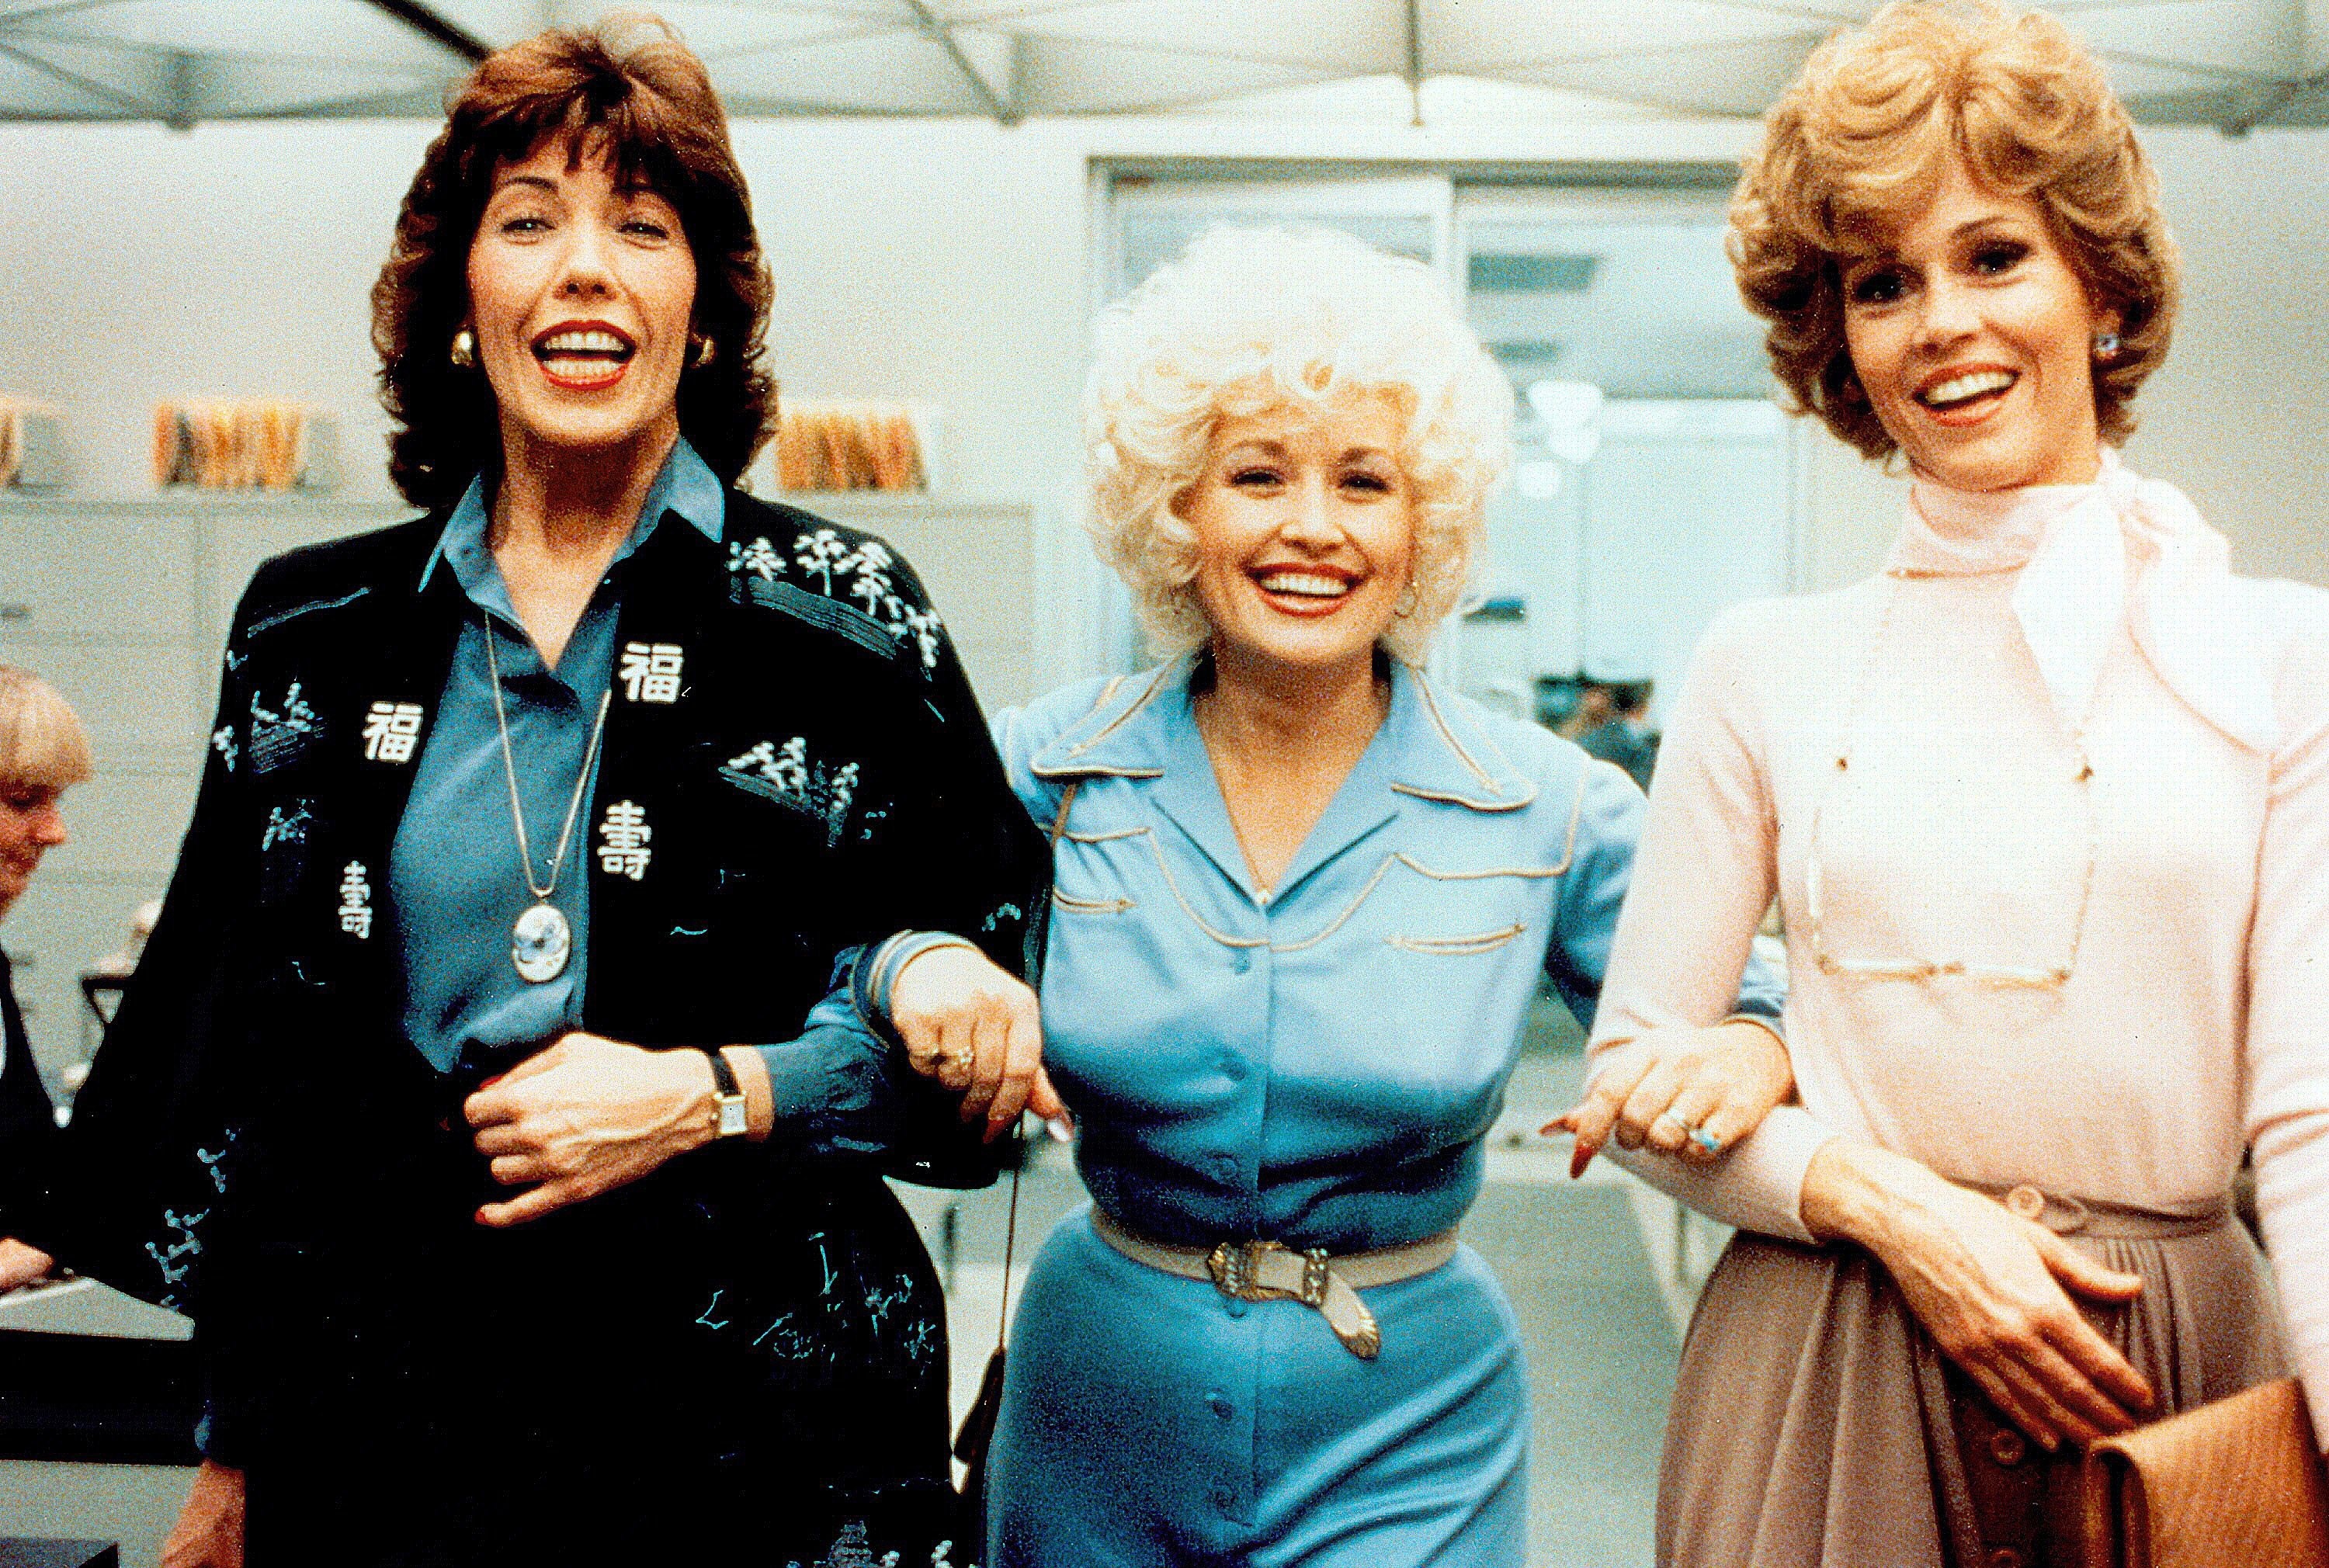 Las actrices Lily Tomlin, Dolly Parton y Jane Fonda en una escena de la comedia "9 to 5" de 1980 (EFE/20th Century Fox)
